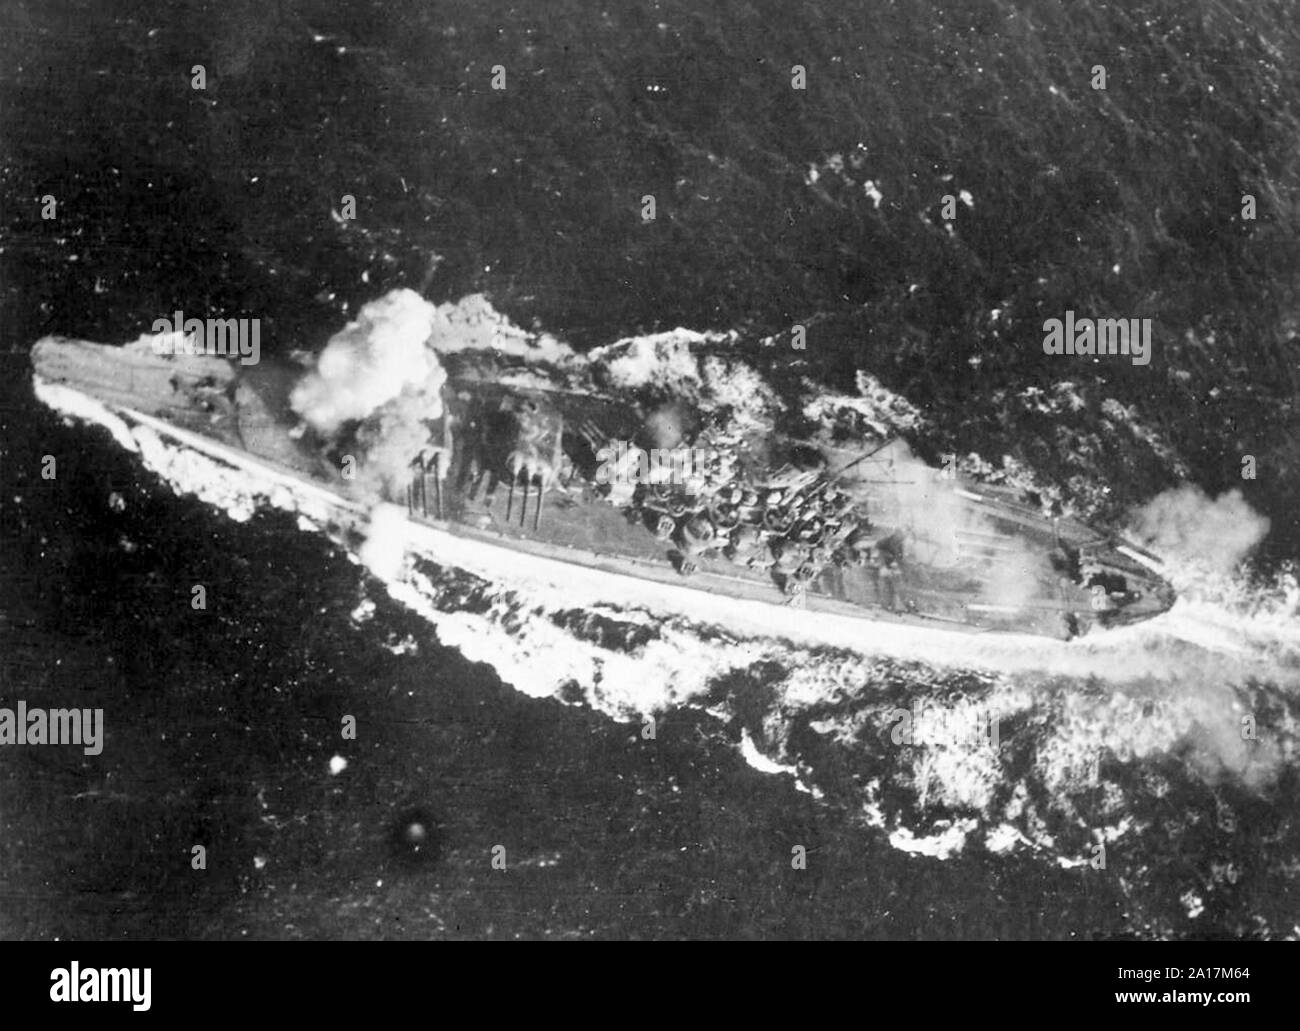 Kampf der Sibuyan Meer (24 Oktober 1944) Schlacht von Leyte Gulf, Yamato durch eine Bombe in der Nähe von ihr zu geschützturm in der sibuyan Meer hit, 24. Oktober 1944 Stockfoto